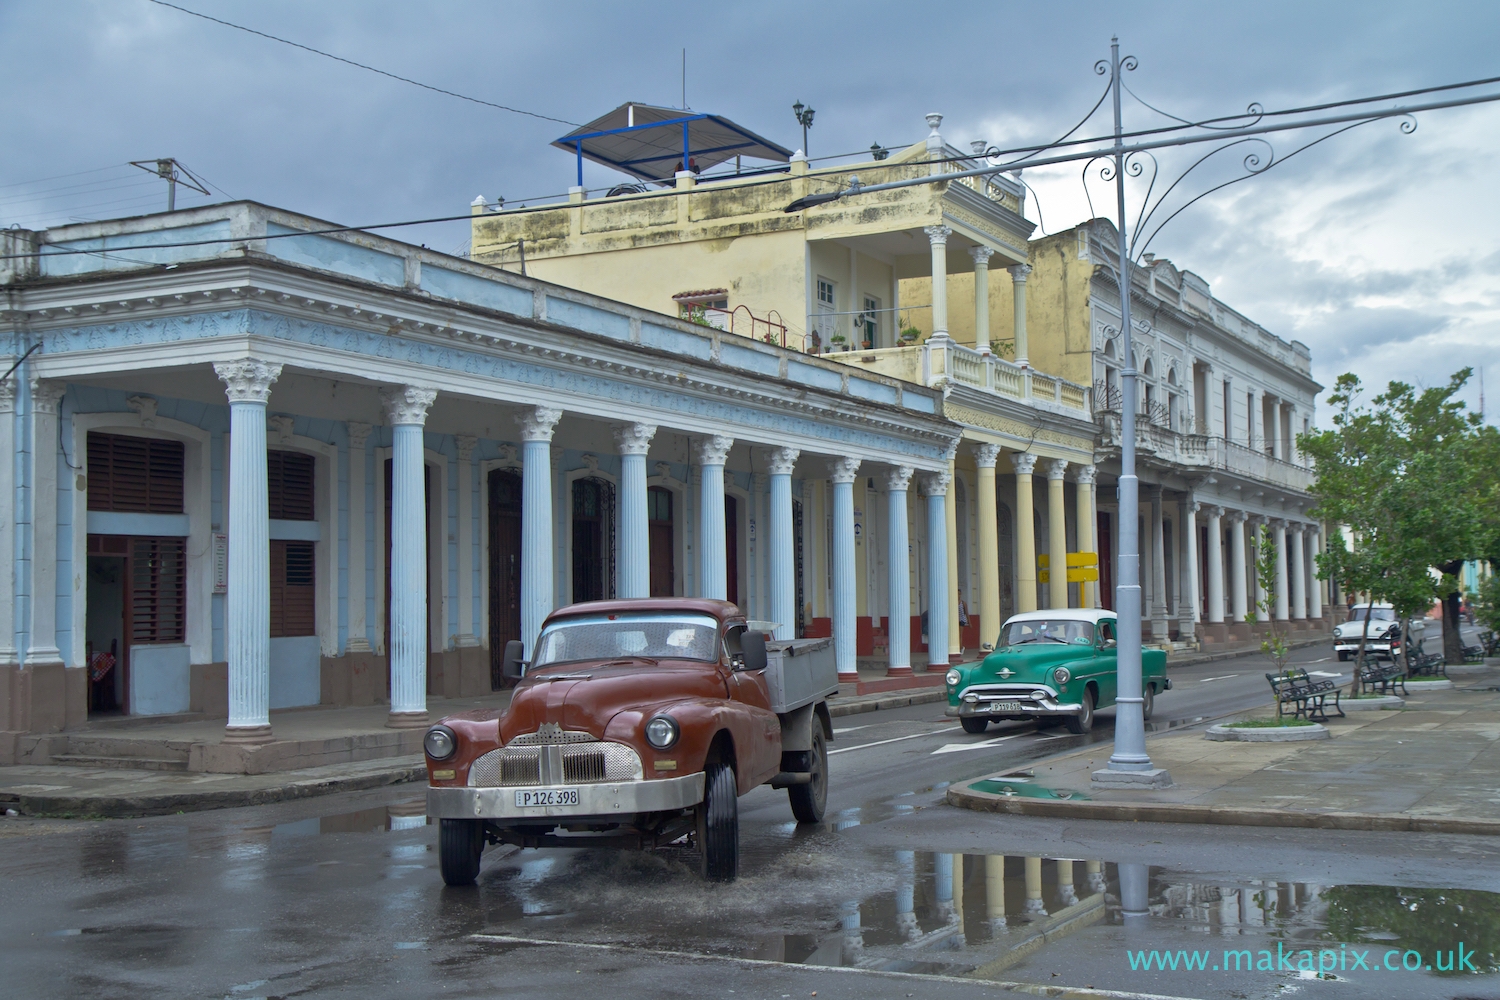 Cienfuegos, Cuba